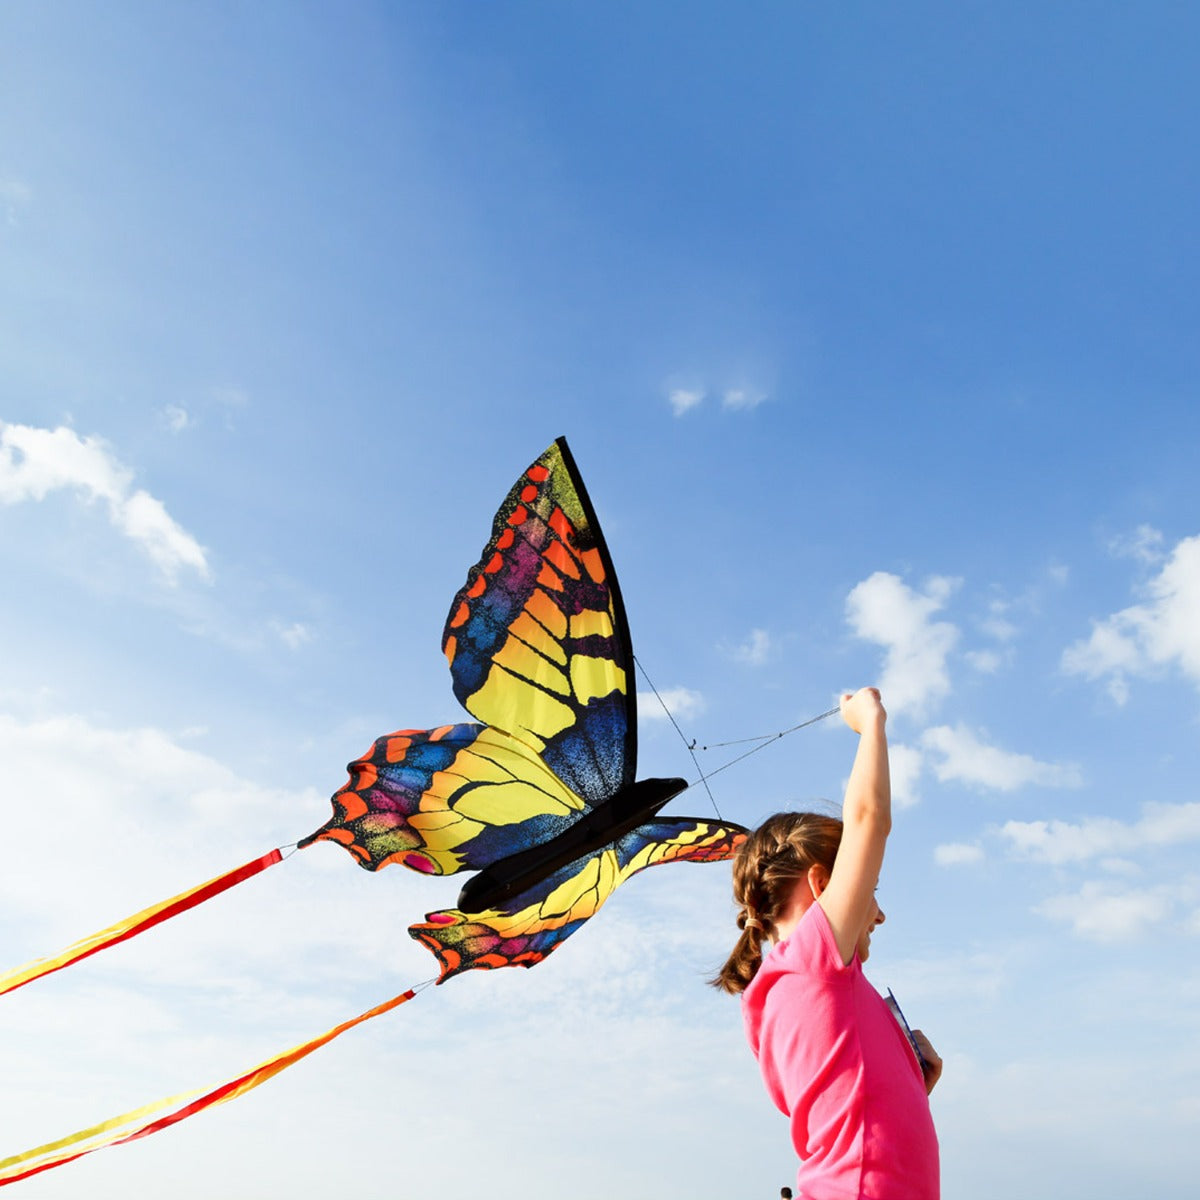 HQ Kinderdrachen Einleiner Drachen HQ Butterfly Kite Swallowtail L Schmetterling Flugdrache